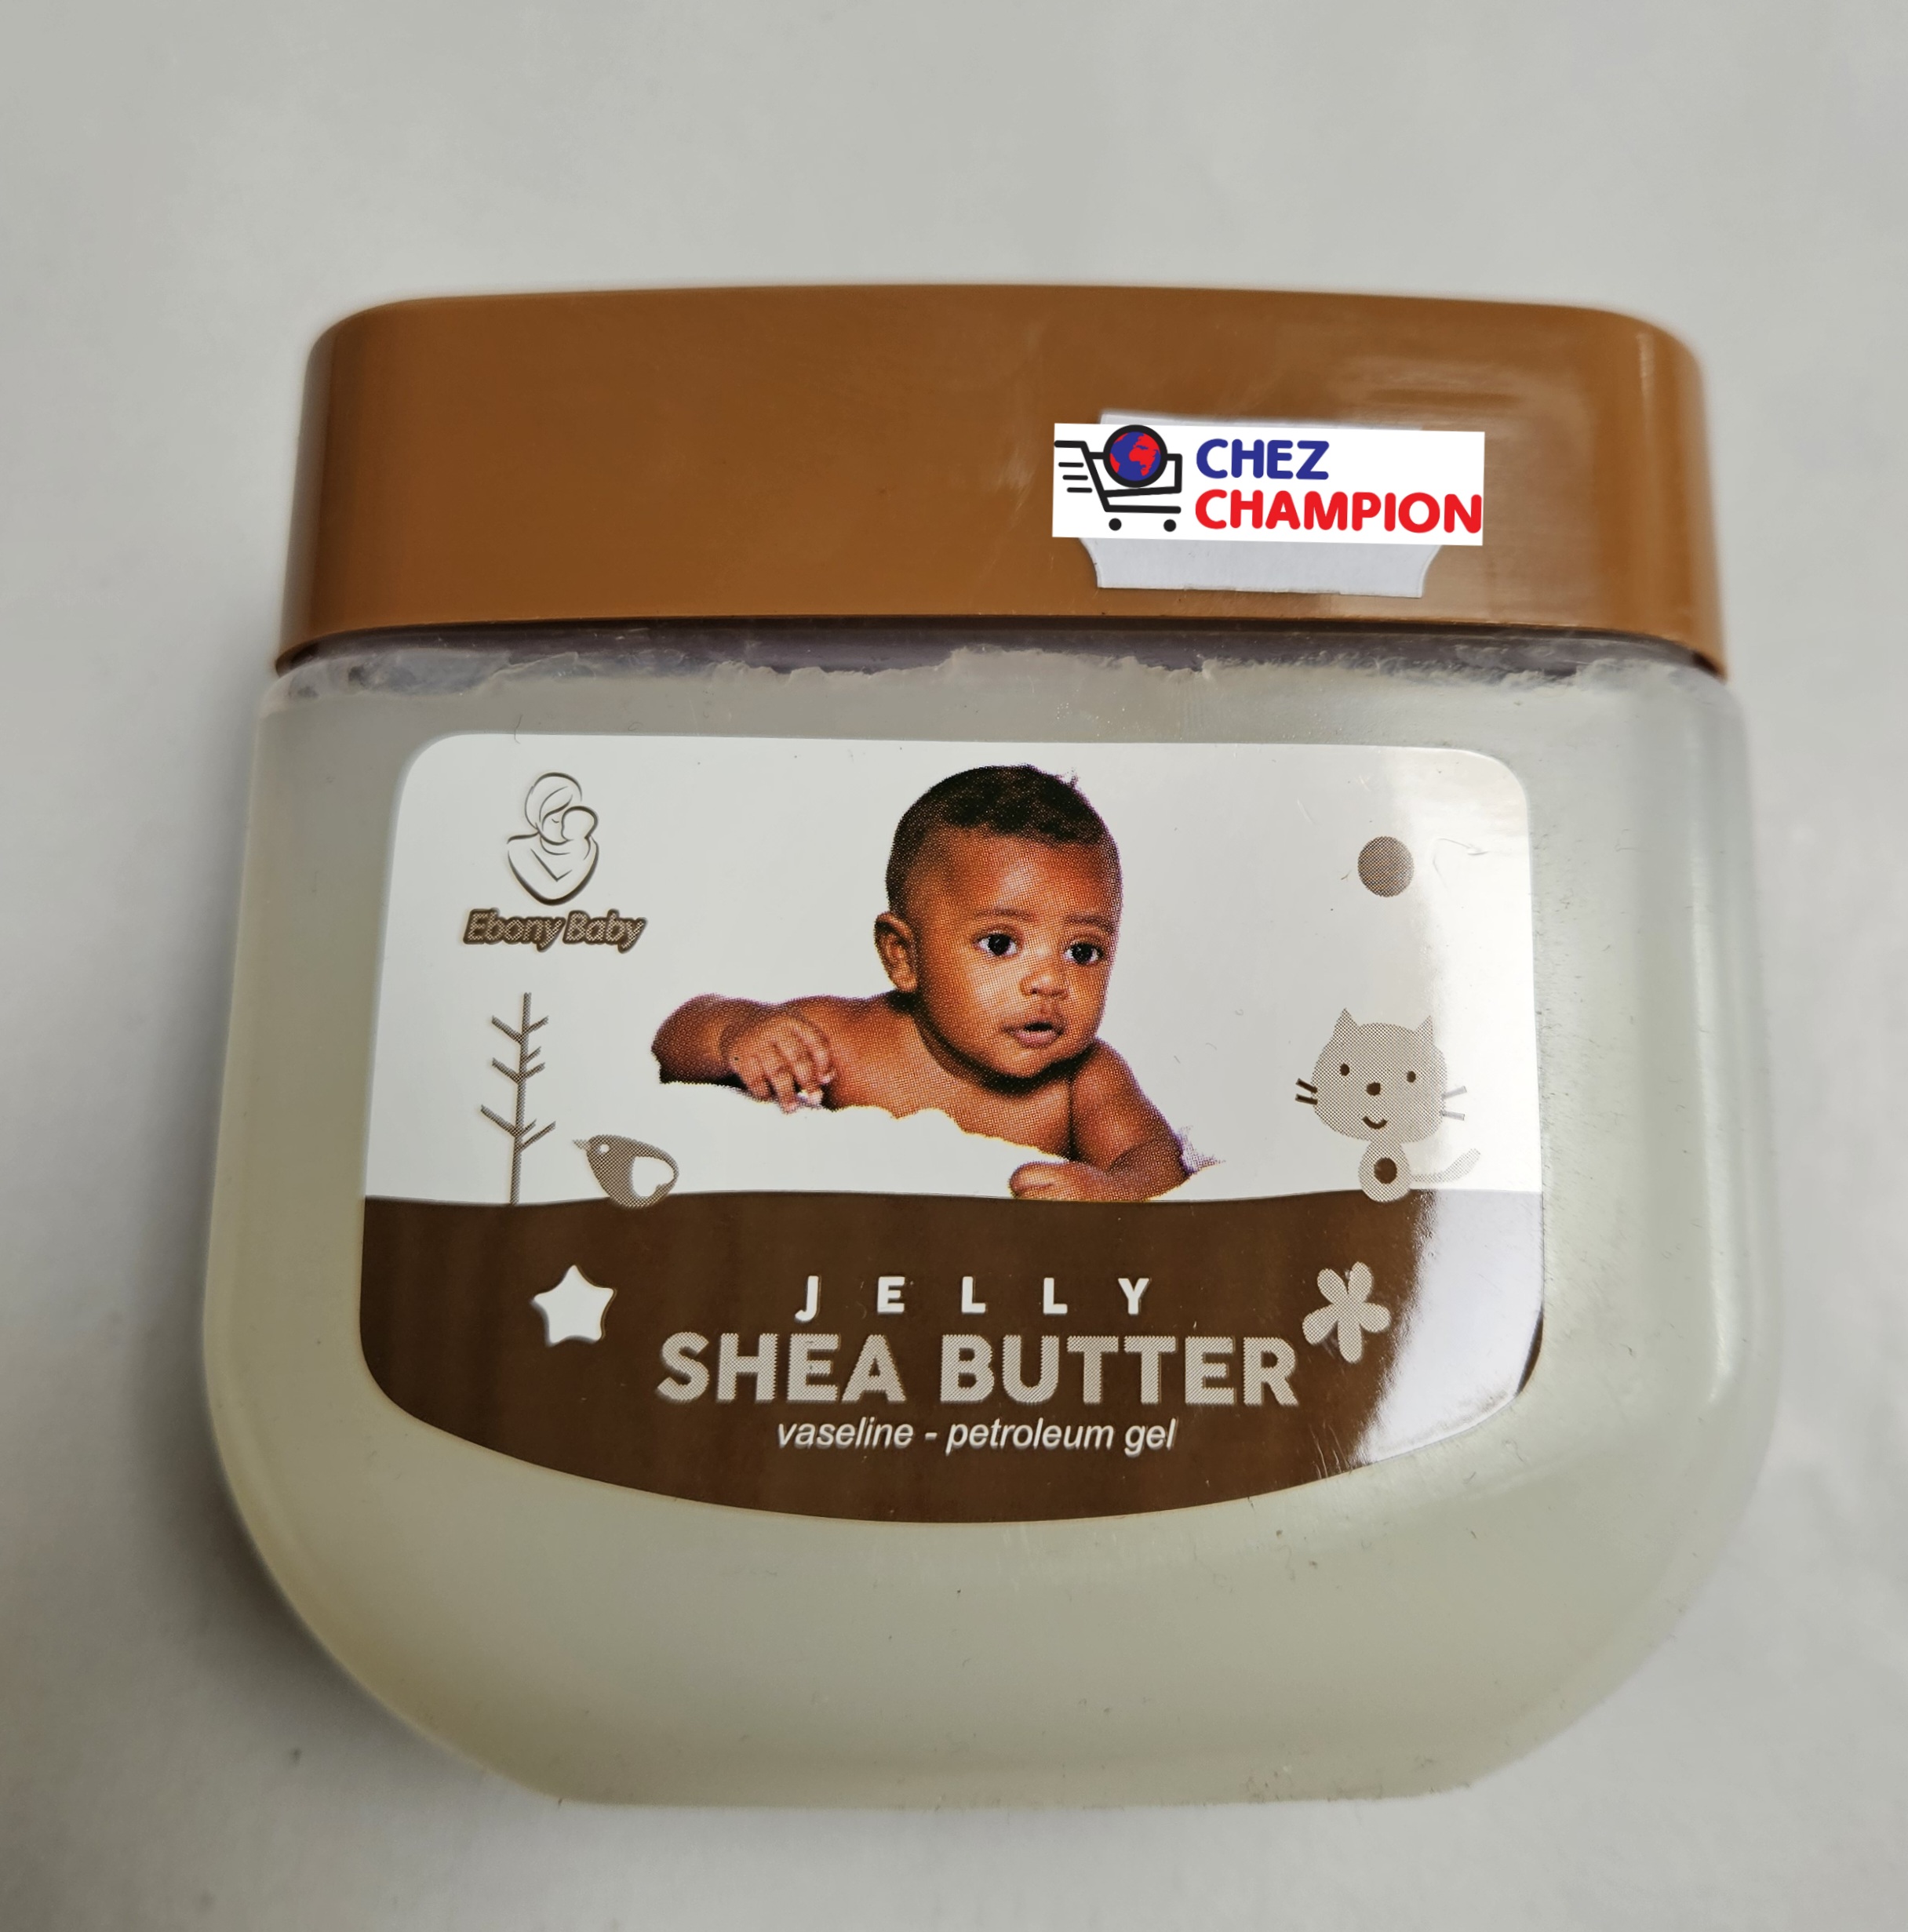 Ebony baby jelly shea butter – vaseline – petroleum gel – 440ml